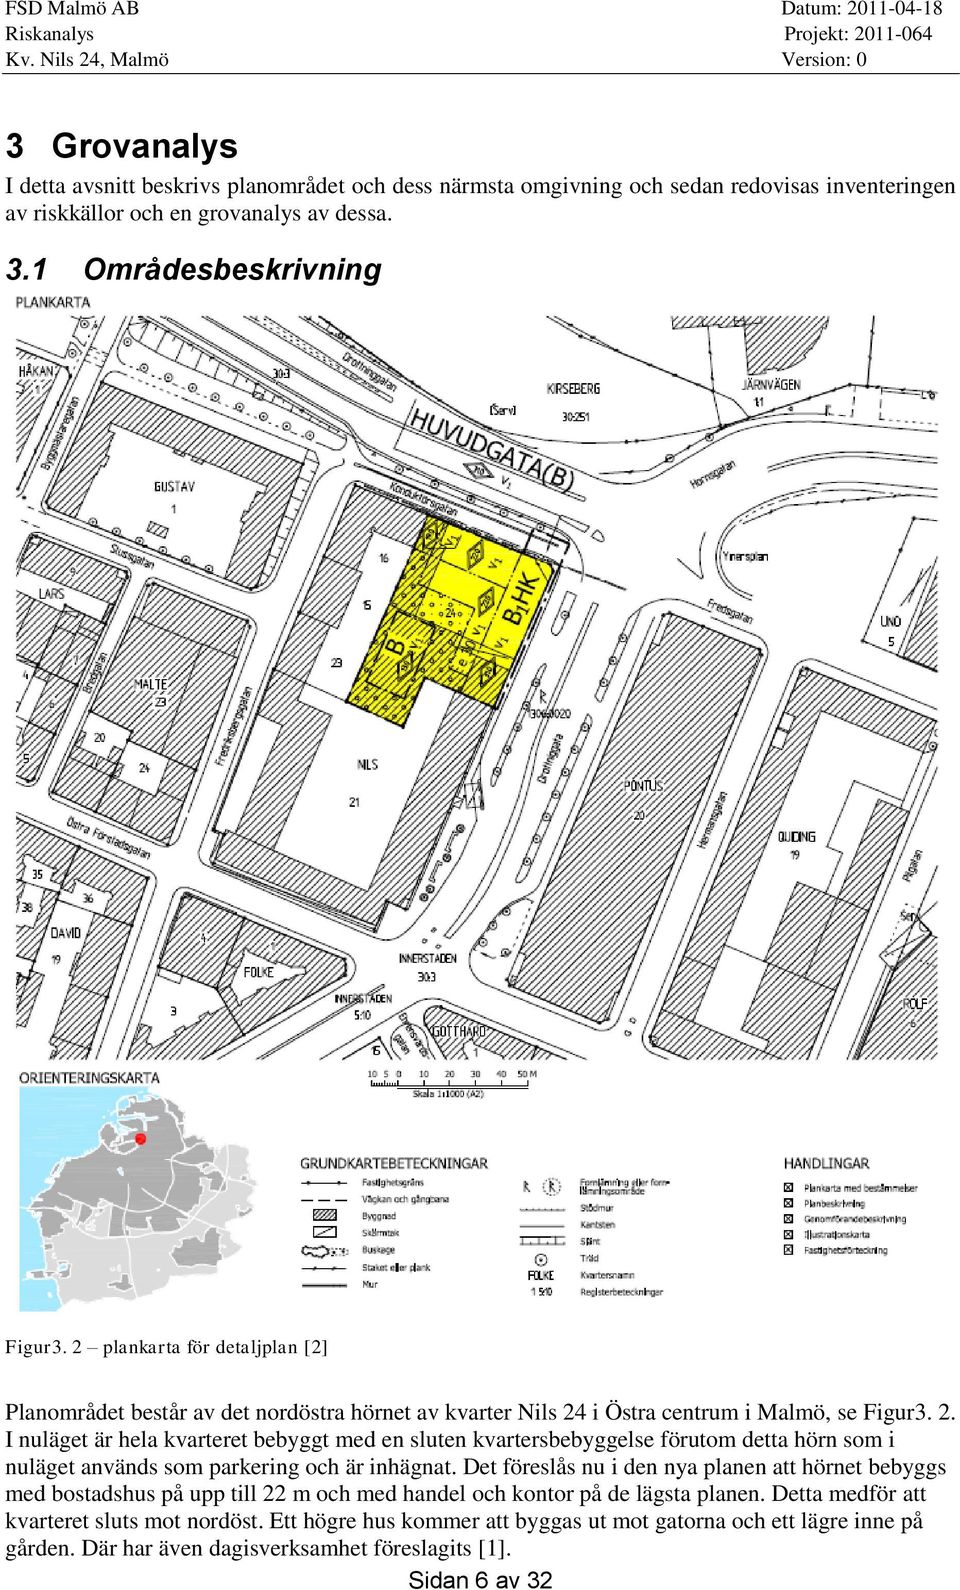 i Östra centrum i Malmö, se Figur3. 2. I nuläget är hela kvarteret bebyggt med en sluten kvartersbebyggelse förutom detta hörn som i nuläget används som parkering och är inhägnat.